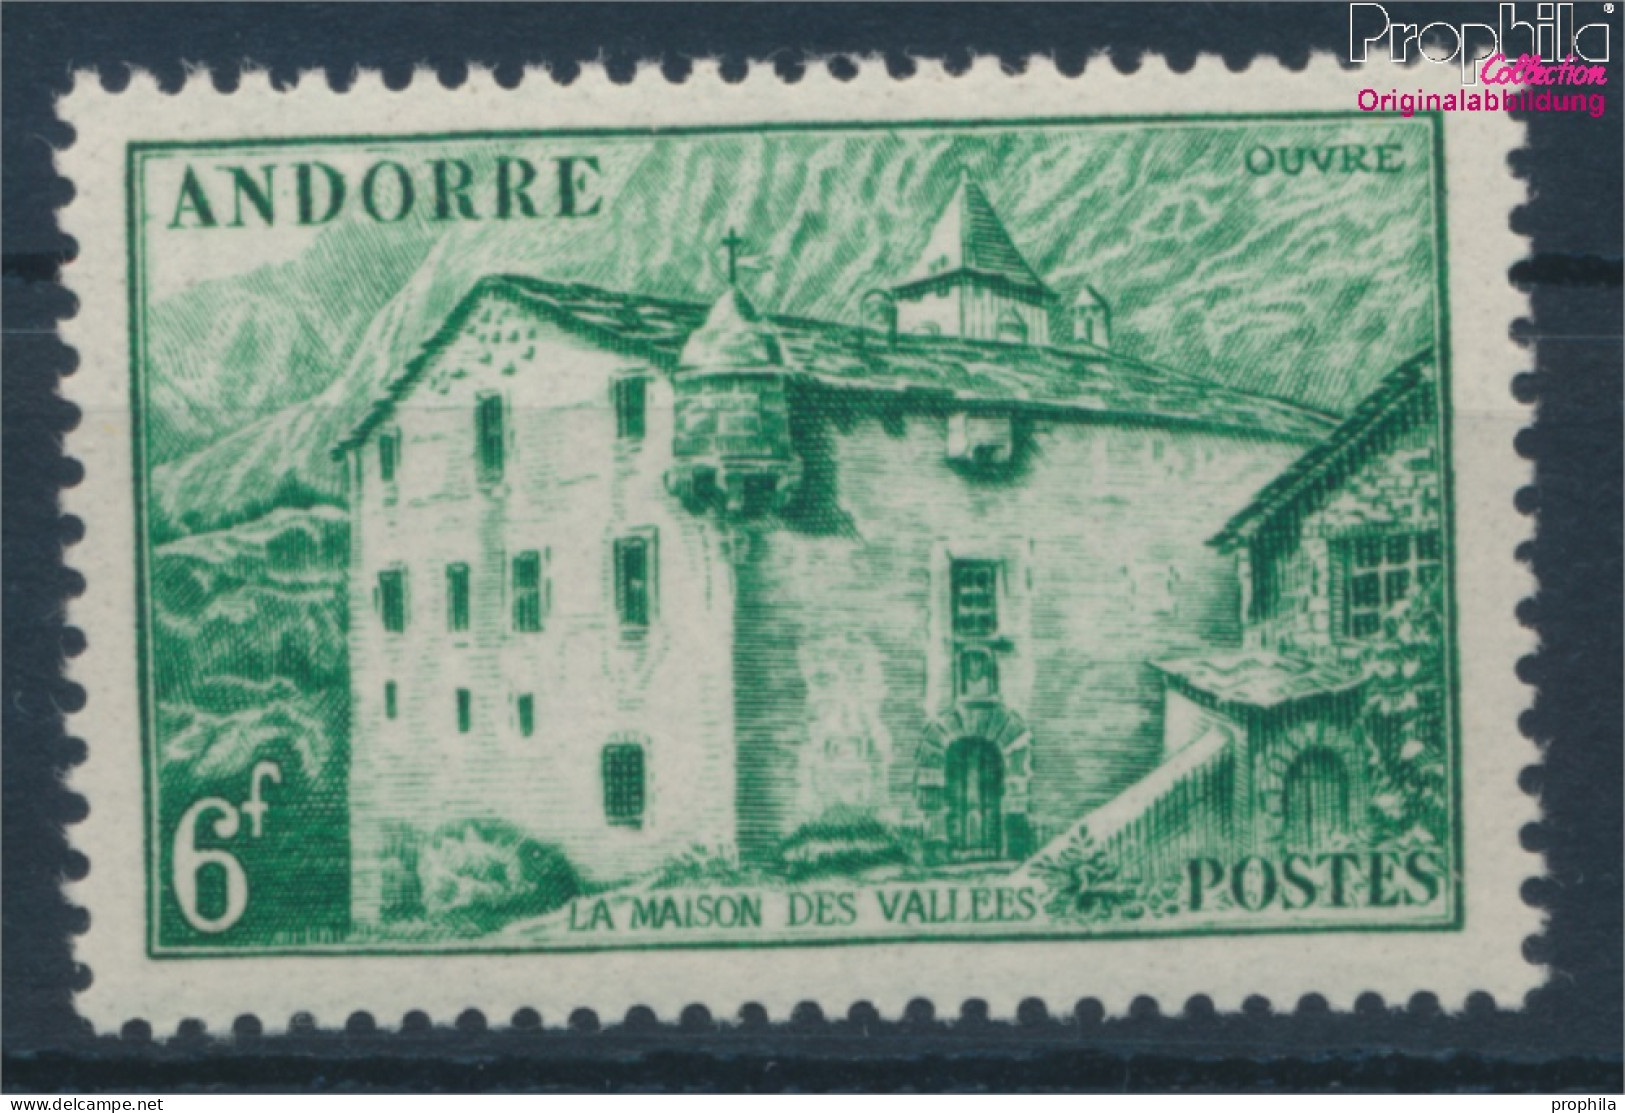 Andorra - Französische Post 122 Postfrisch 1944 Landschaften (10363116 - Neufs